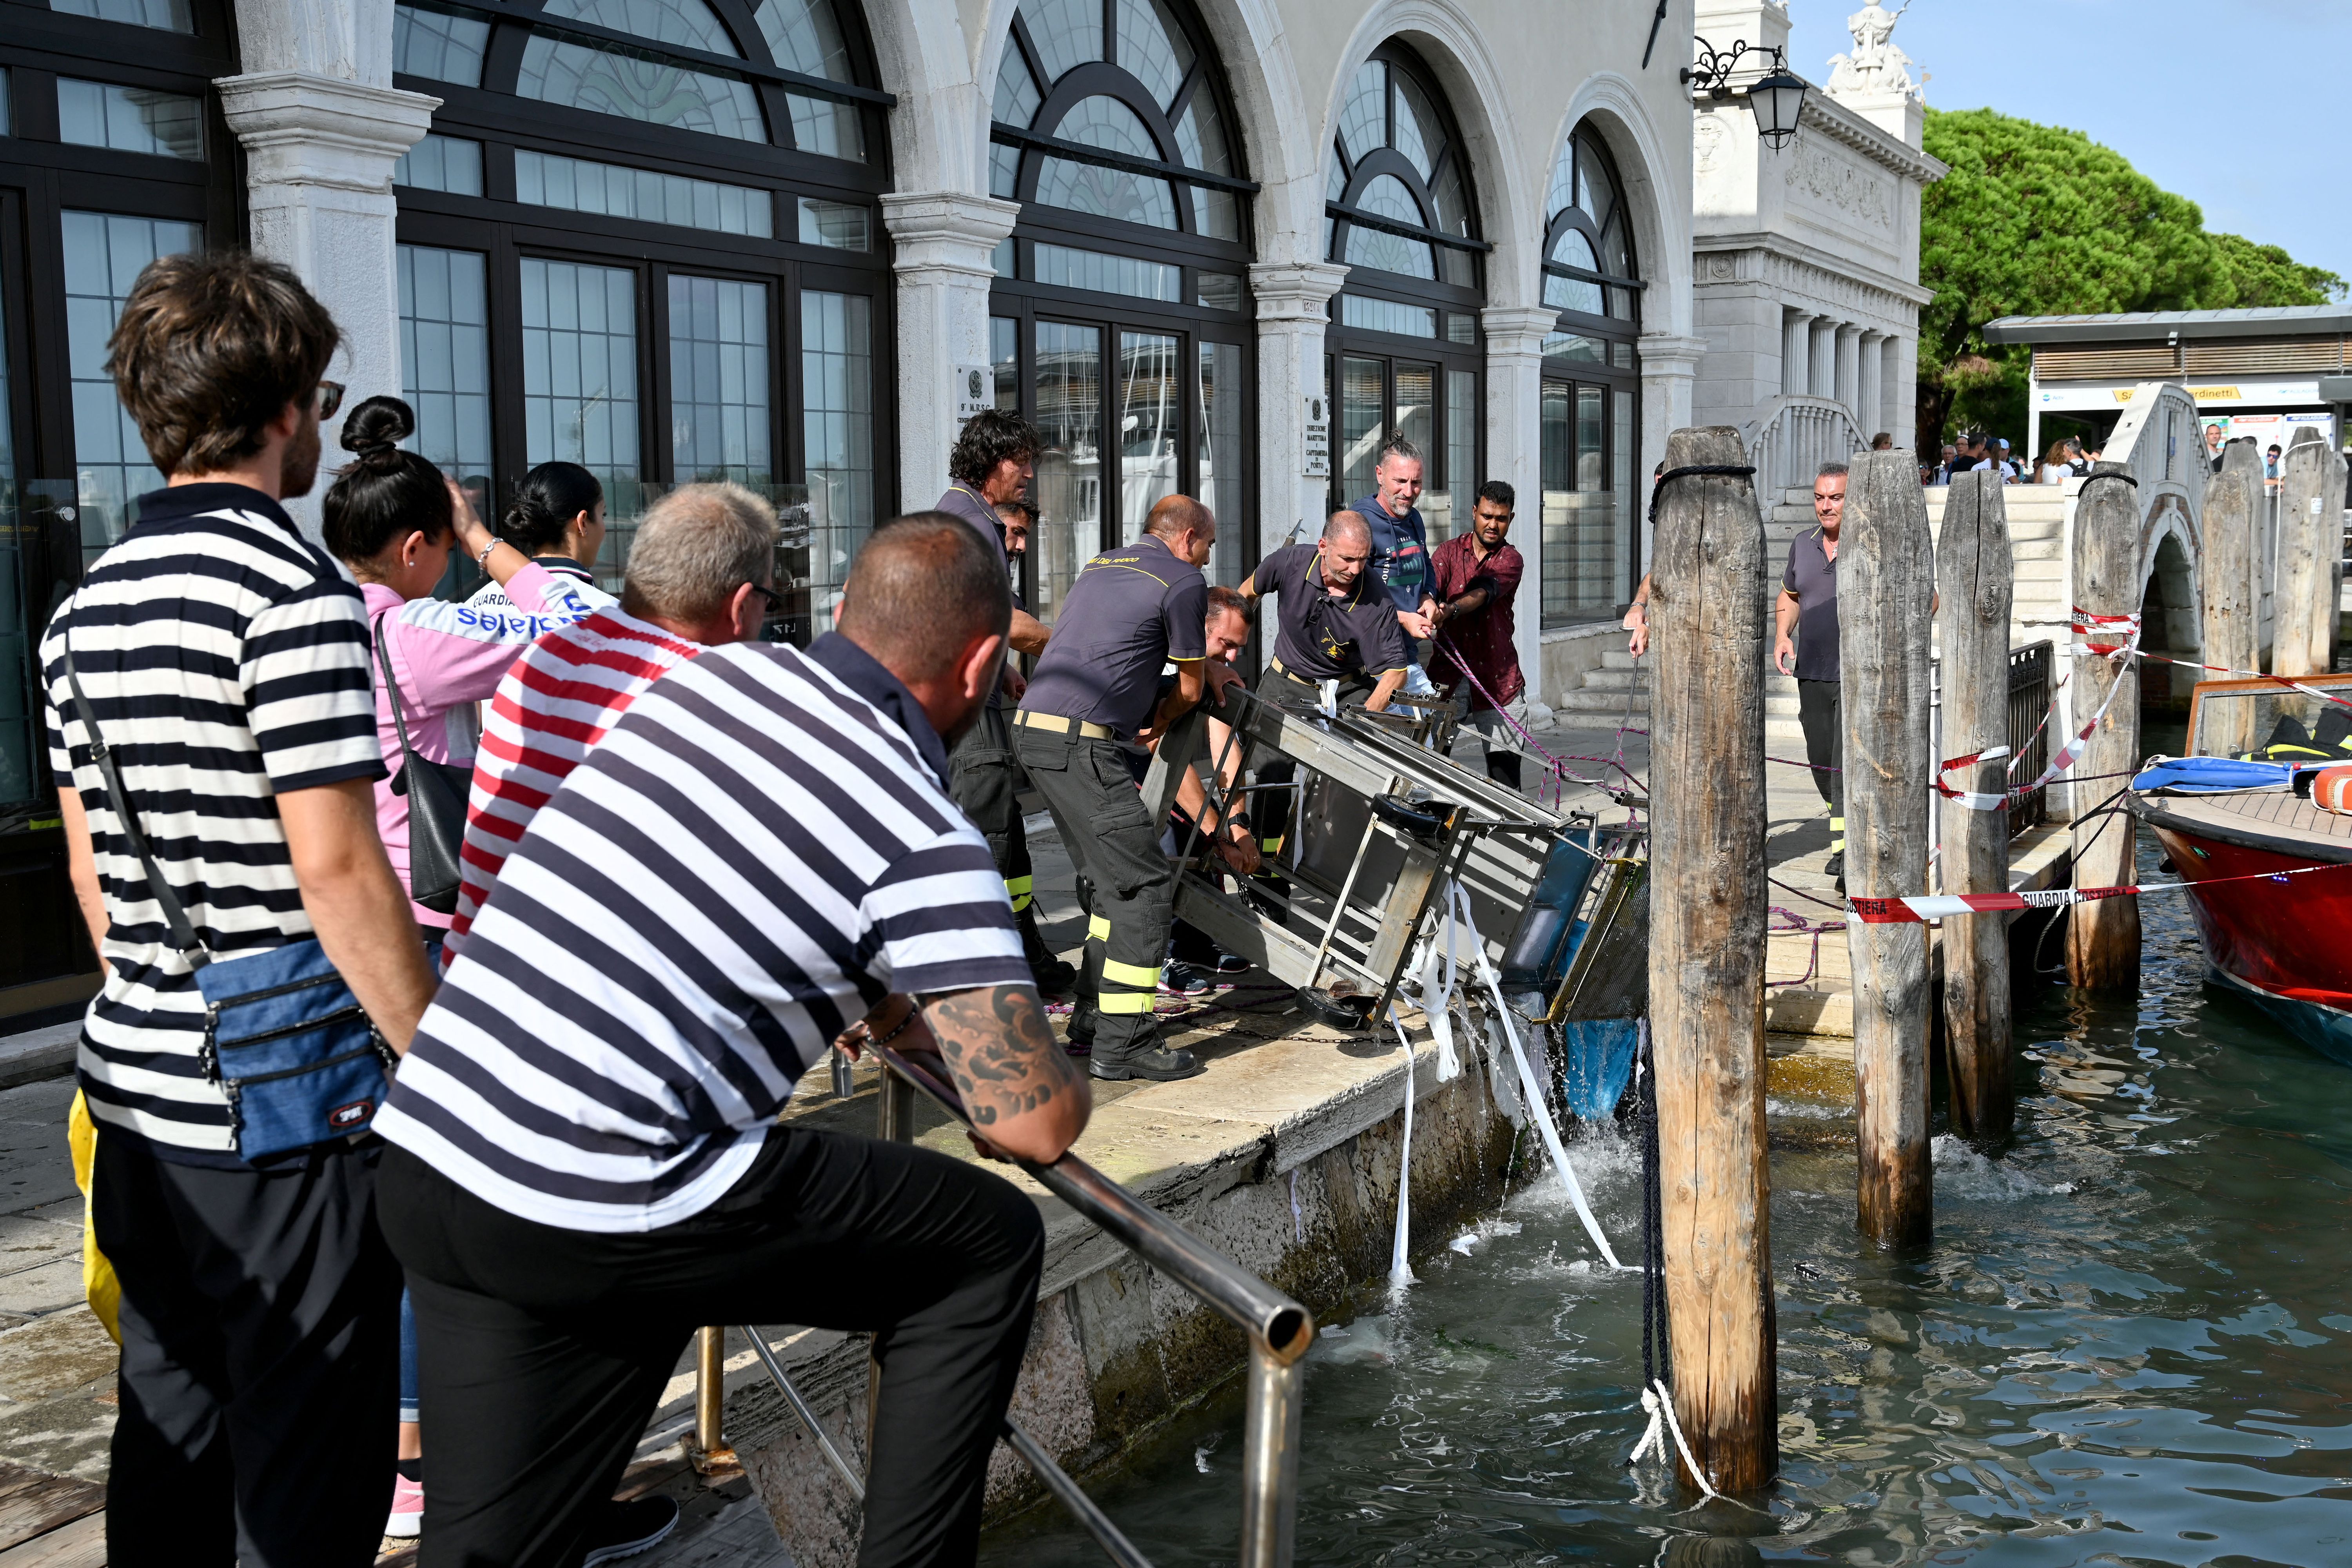 Feuerwehrleute bergen einen Souvenirstand, der am 18. August aufgrund starker Winde im Canal Grande in Venedig gelandet war.